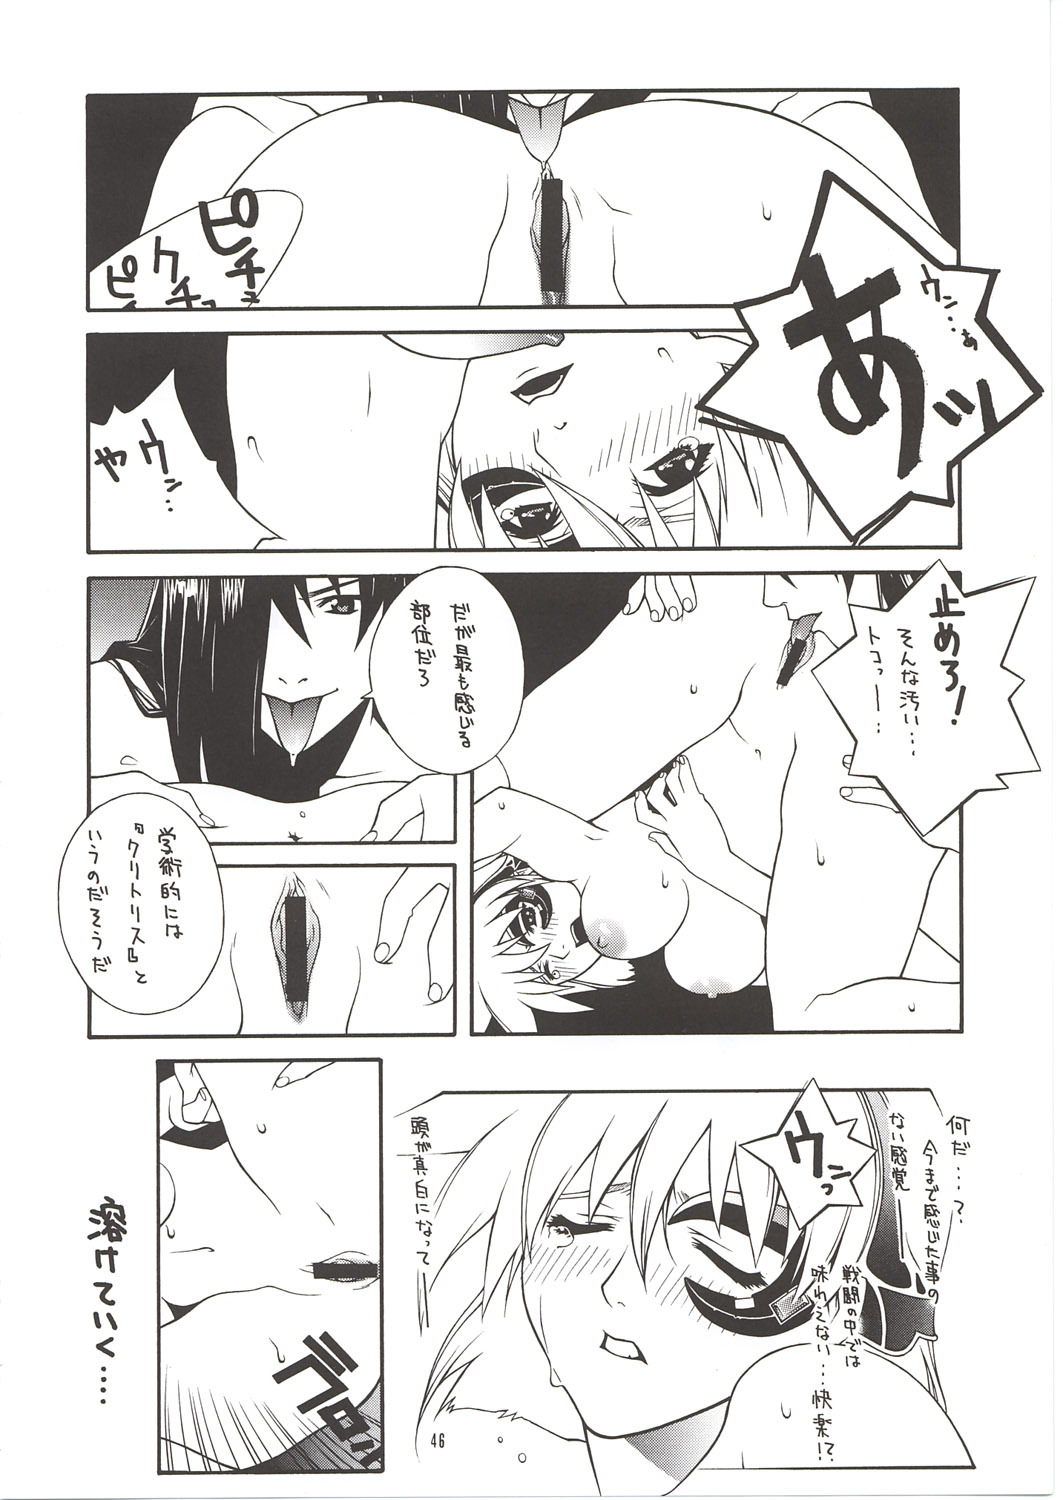 [IRODORI (Nitta Kumi)] MIX-JUICE (Onegai Teacher, Sakura Taisen 3, Vandread) page 45 full